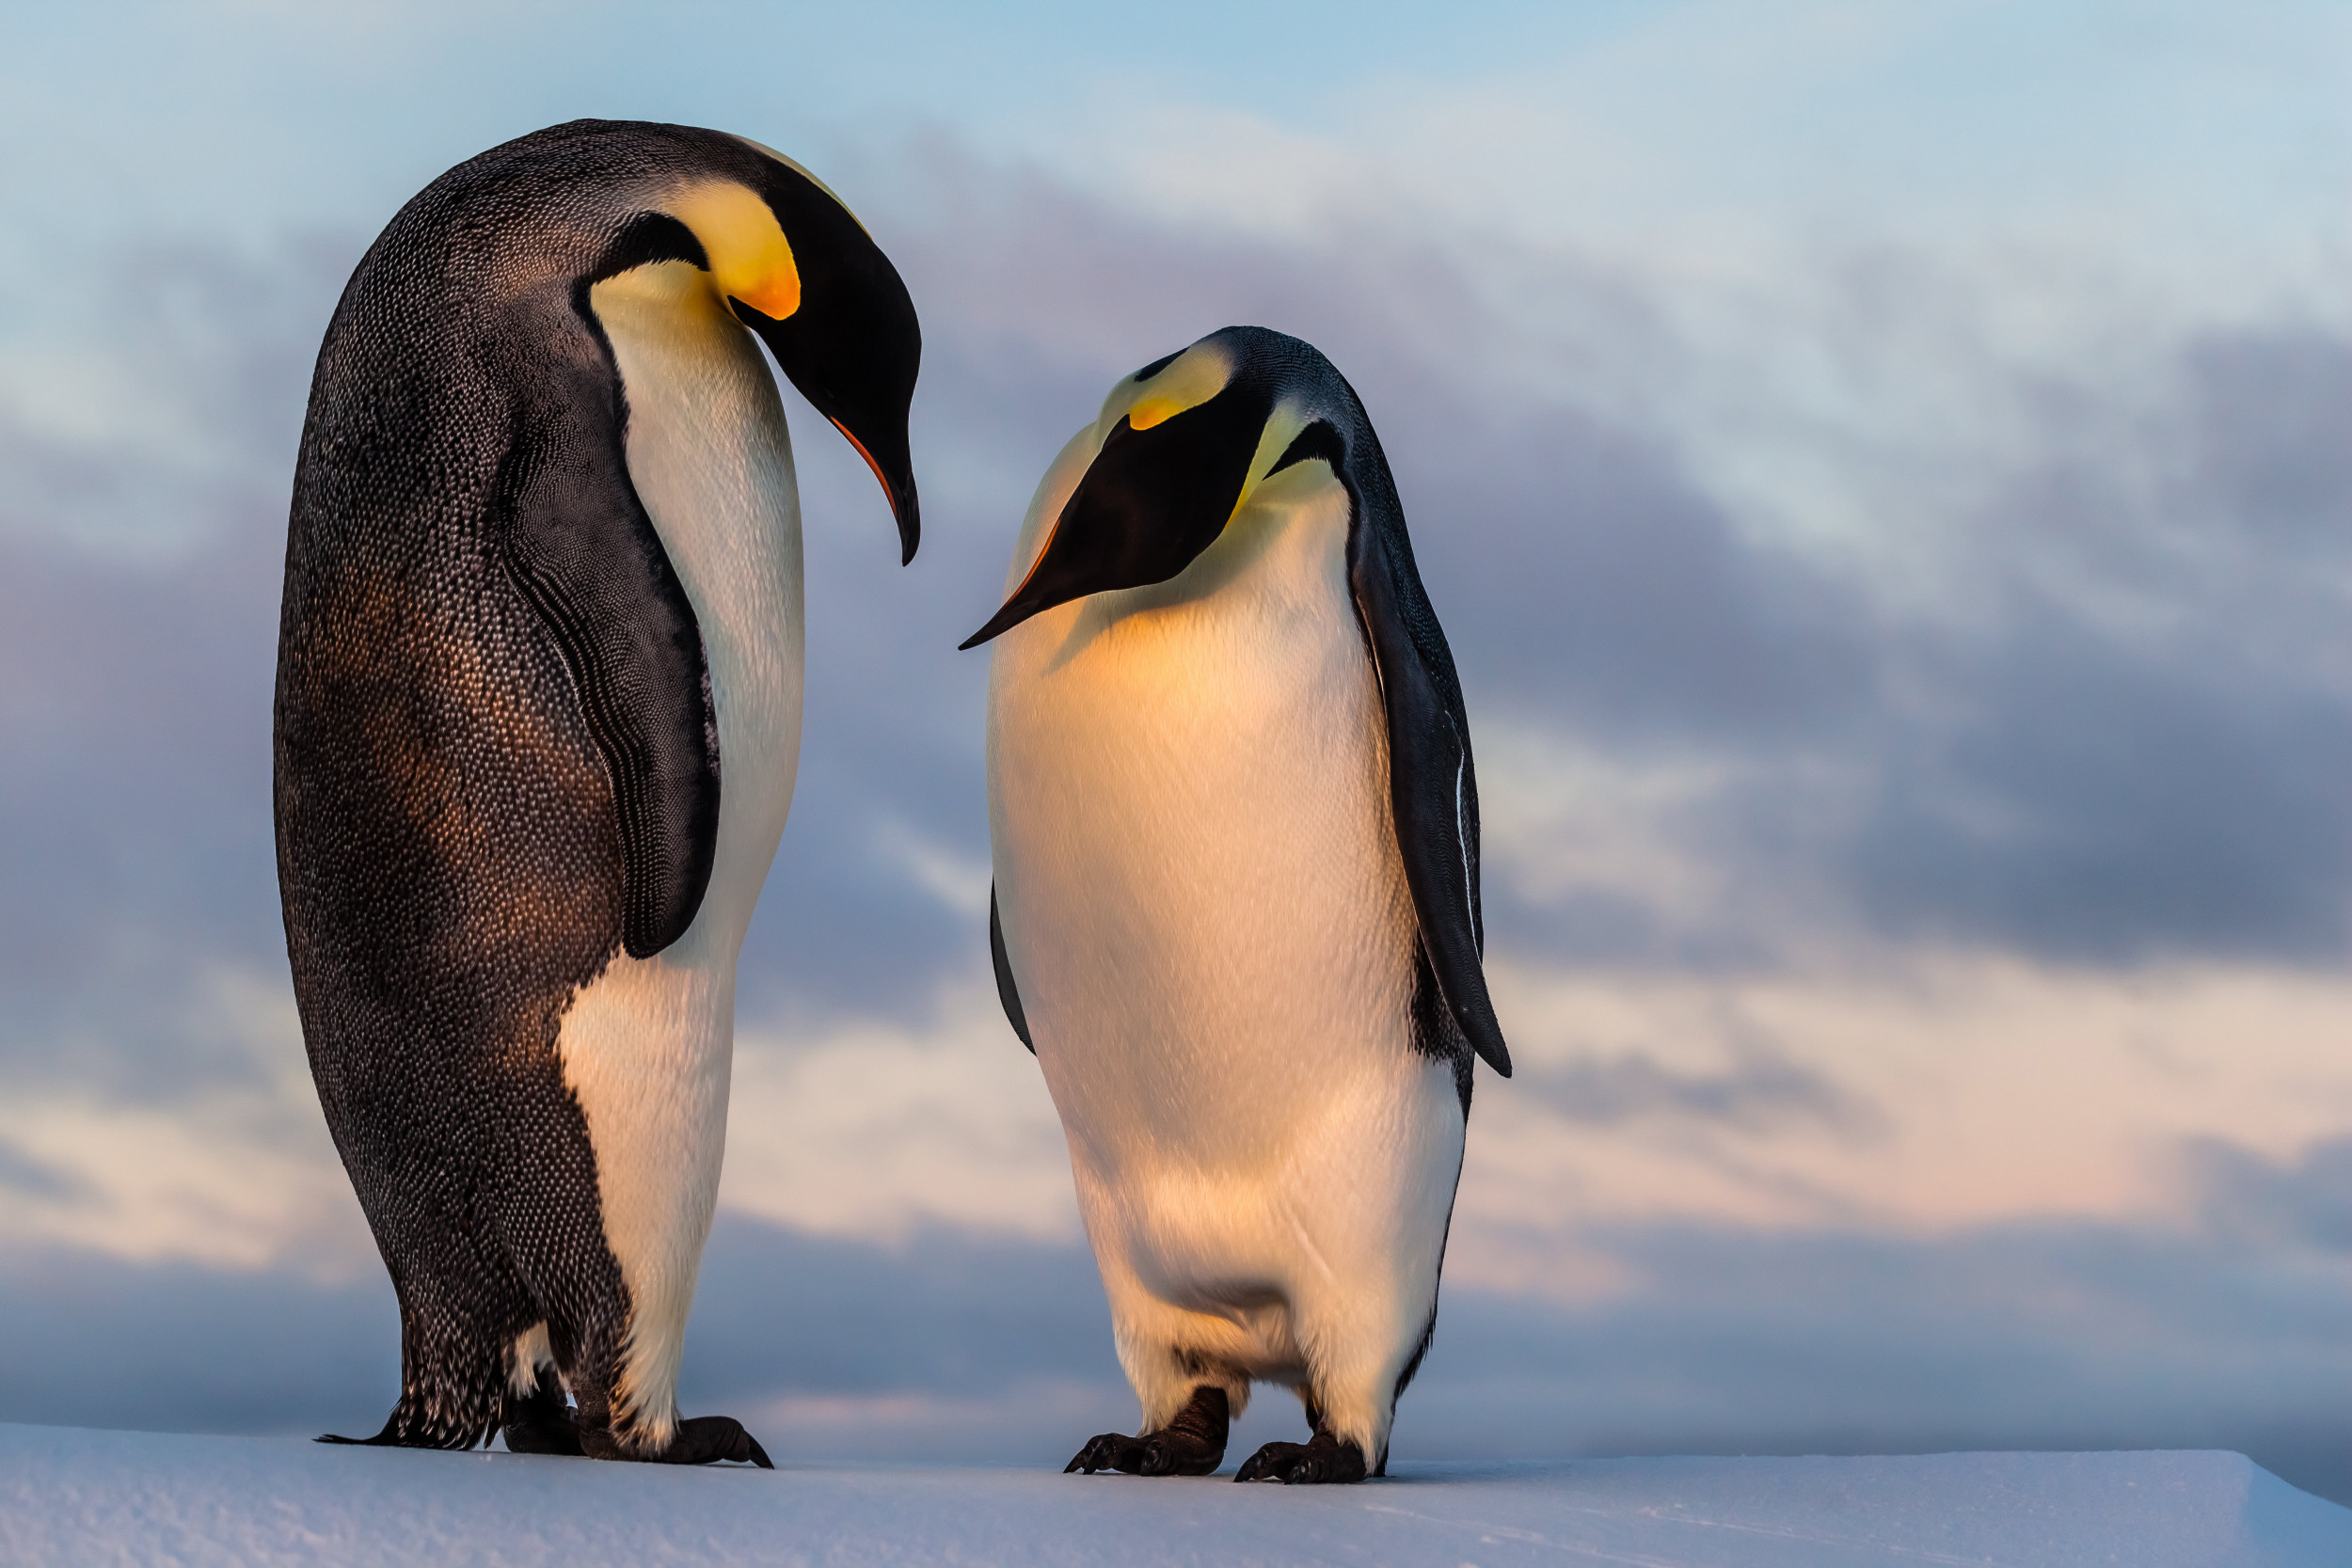 Chim cánh cụt đang nghiêng đầu nhìn nhau